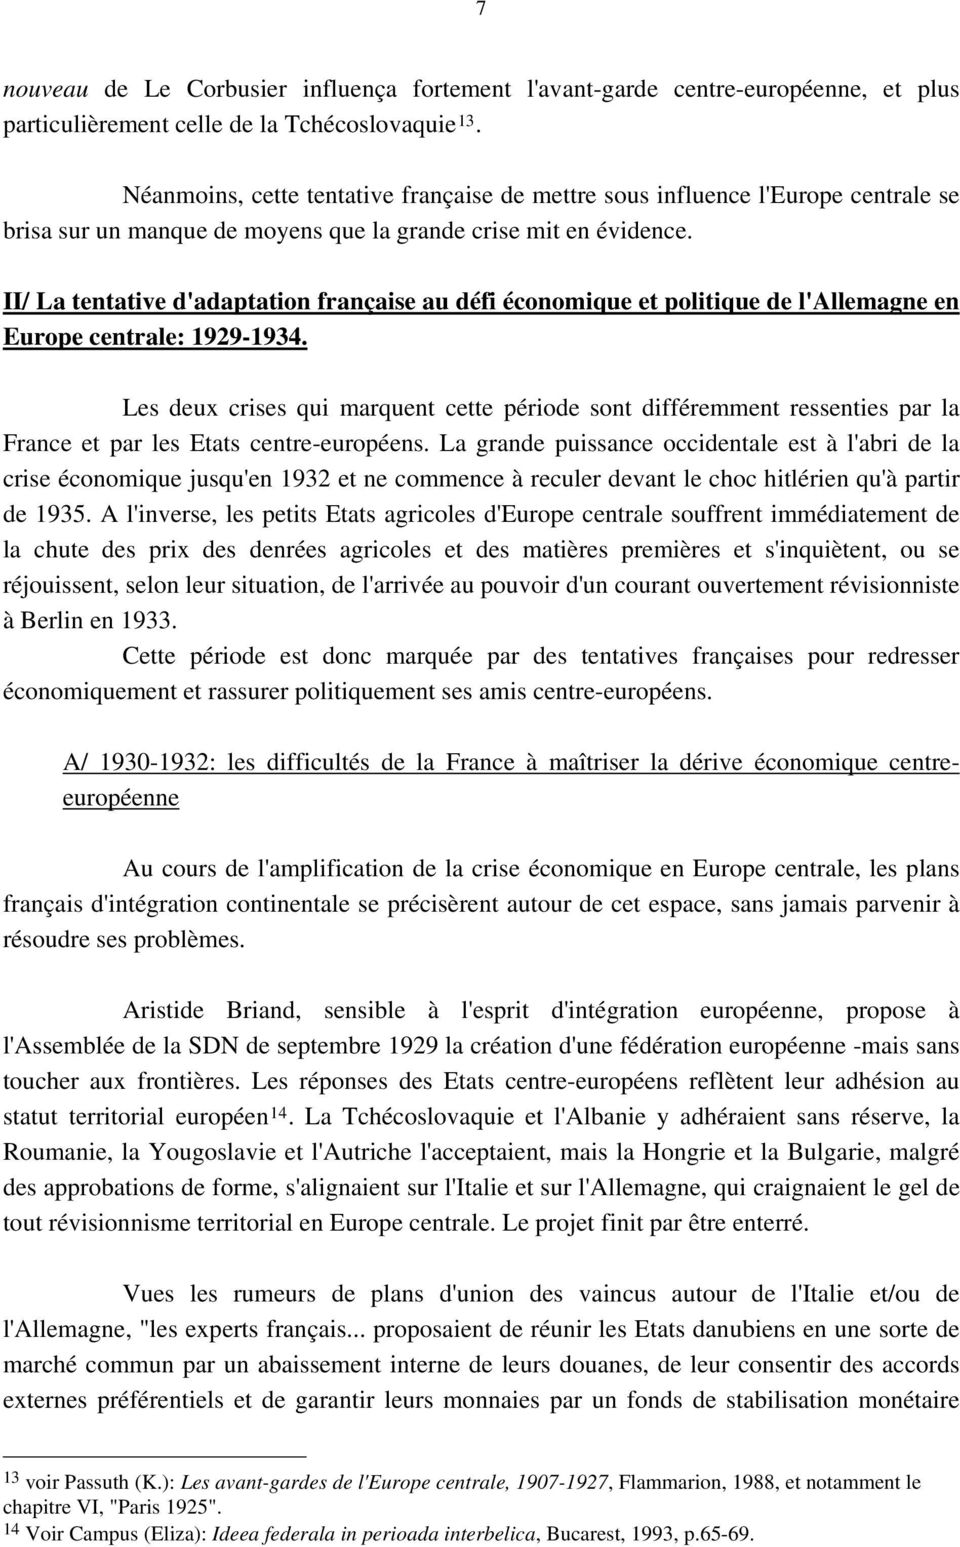 II/ La tentative d'adaptation française au défi économique et politique de l'allemagne en Europe centrale: 1929-1934.